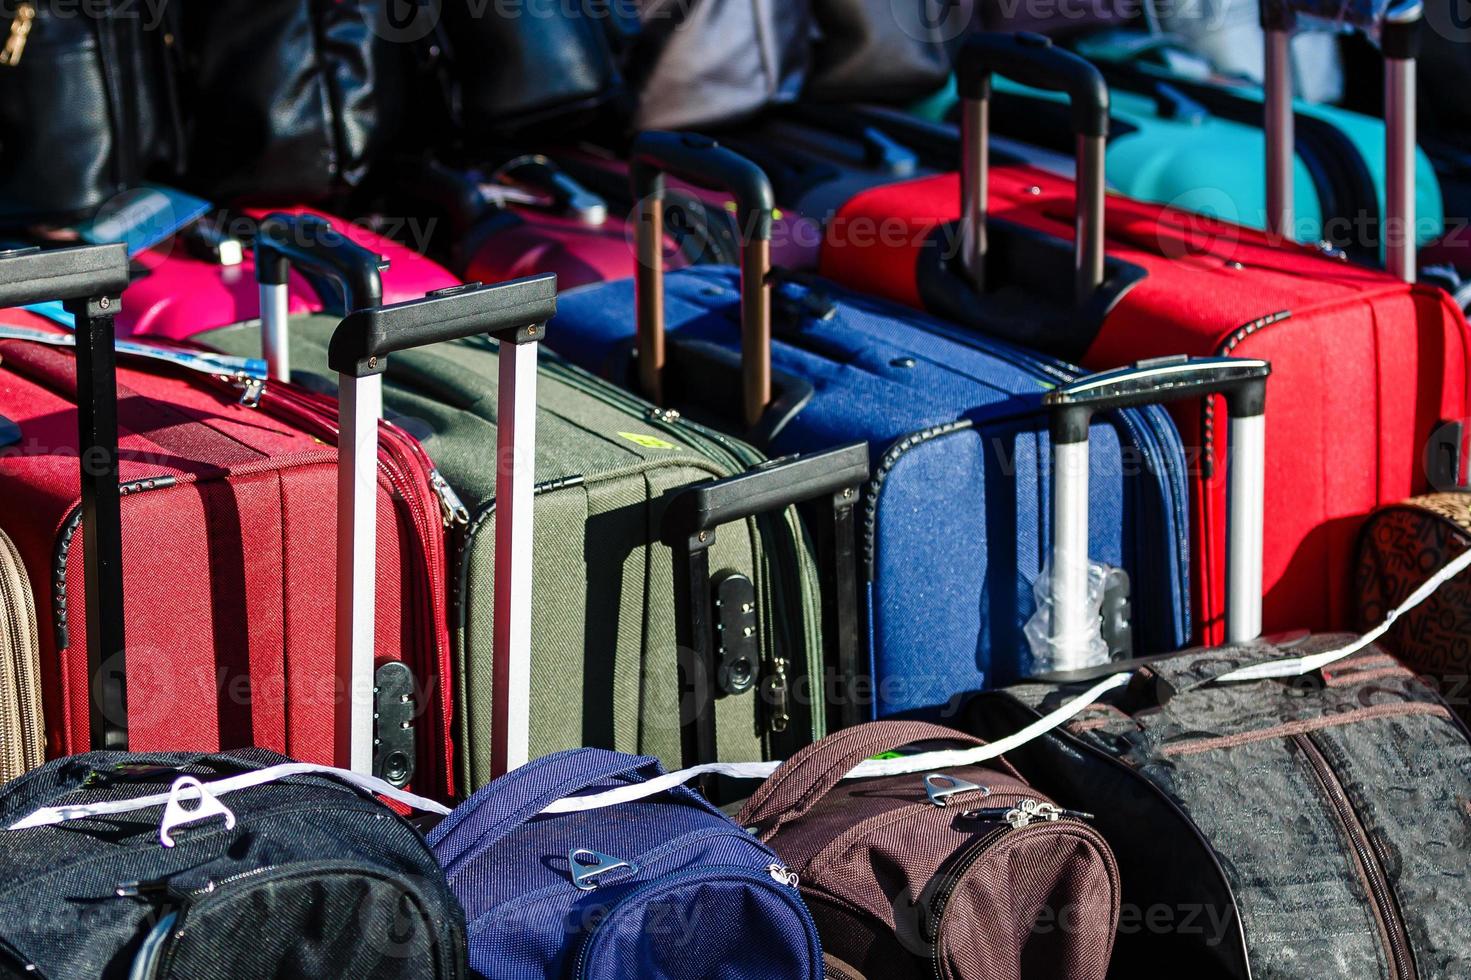 Many travel suitcases photo